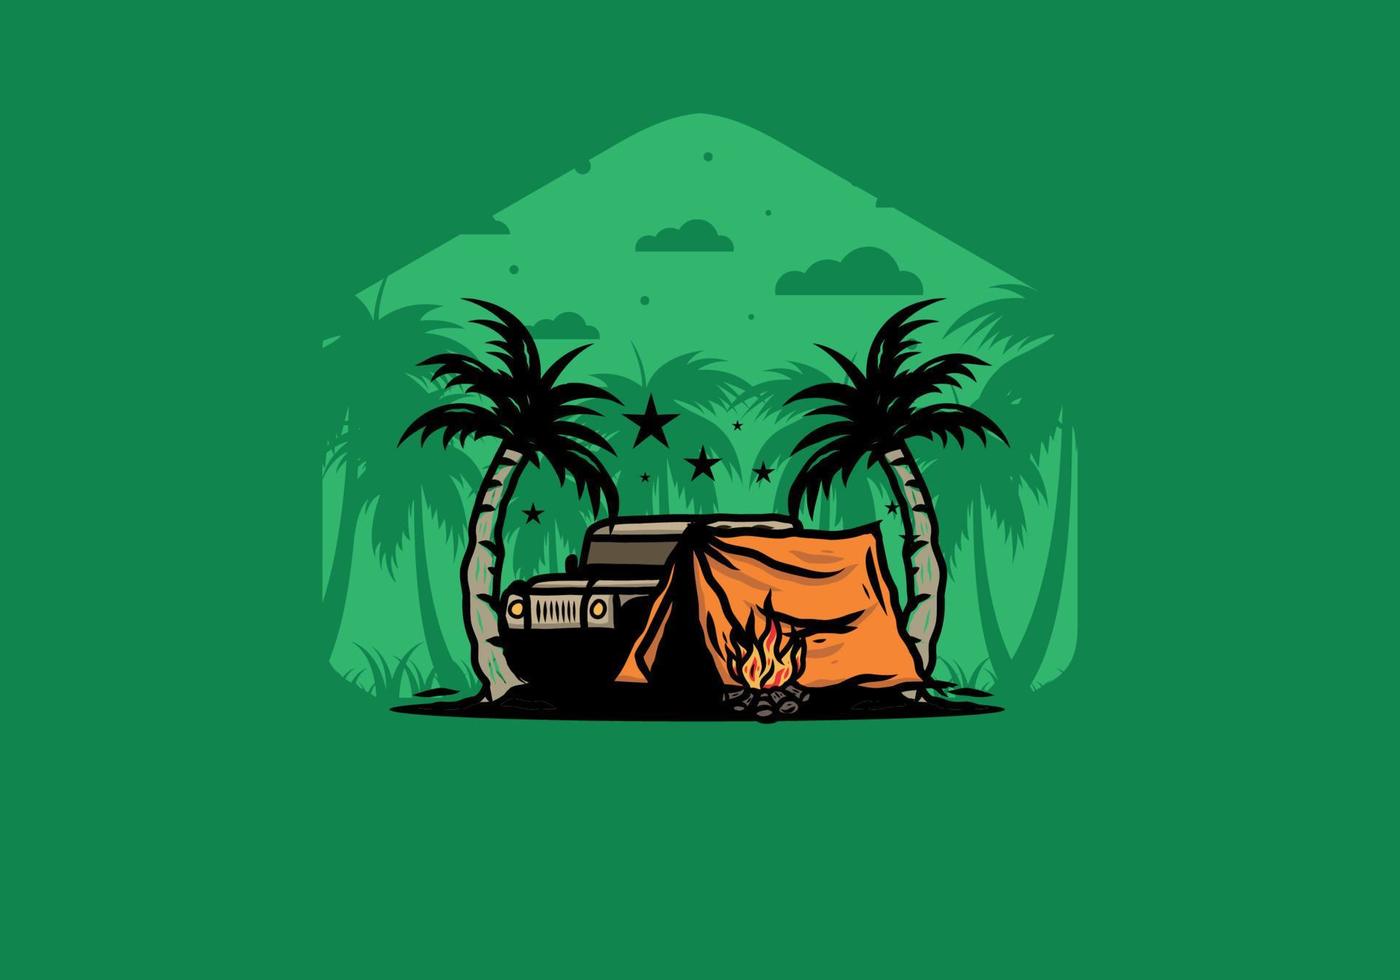 barraca de acampamento na frente do carro entre ilustração de coqueiro vetor